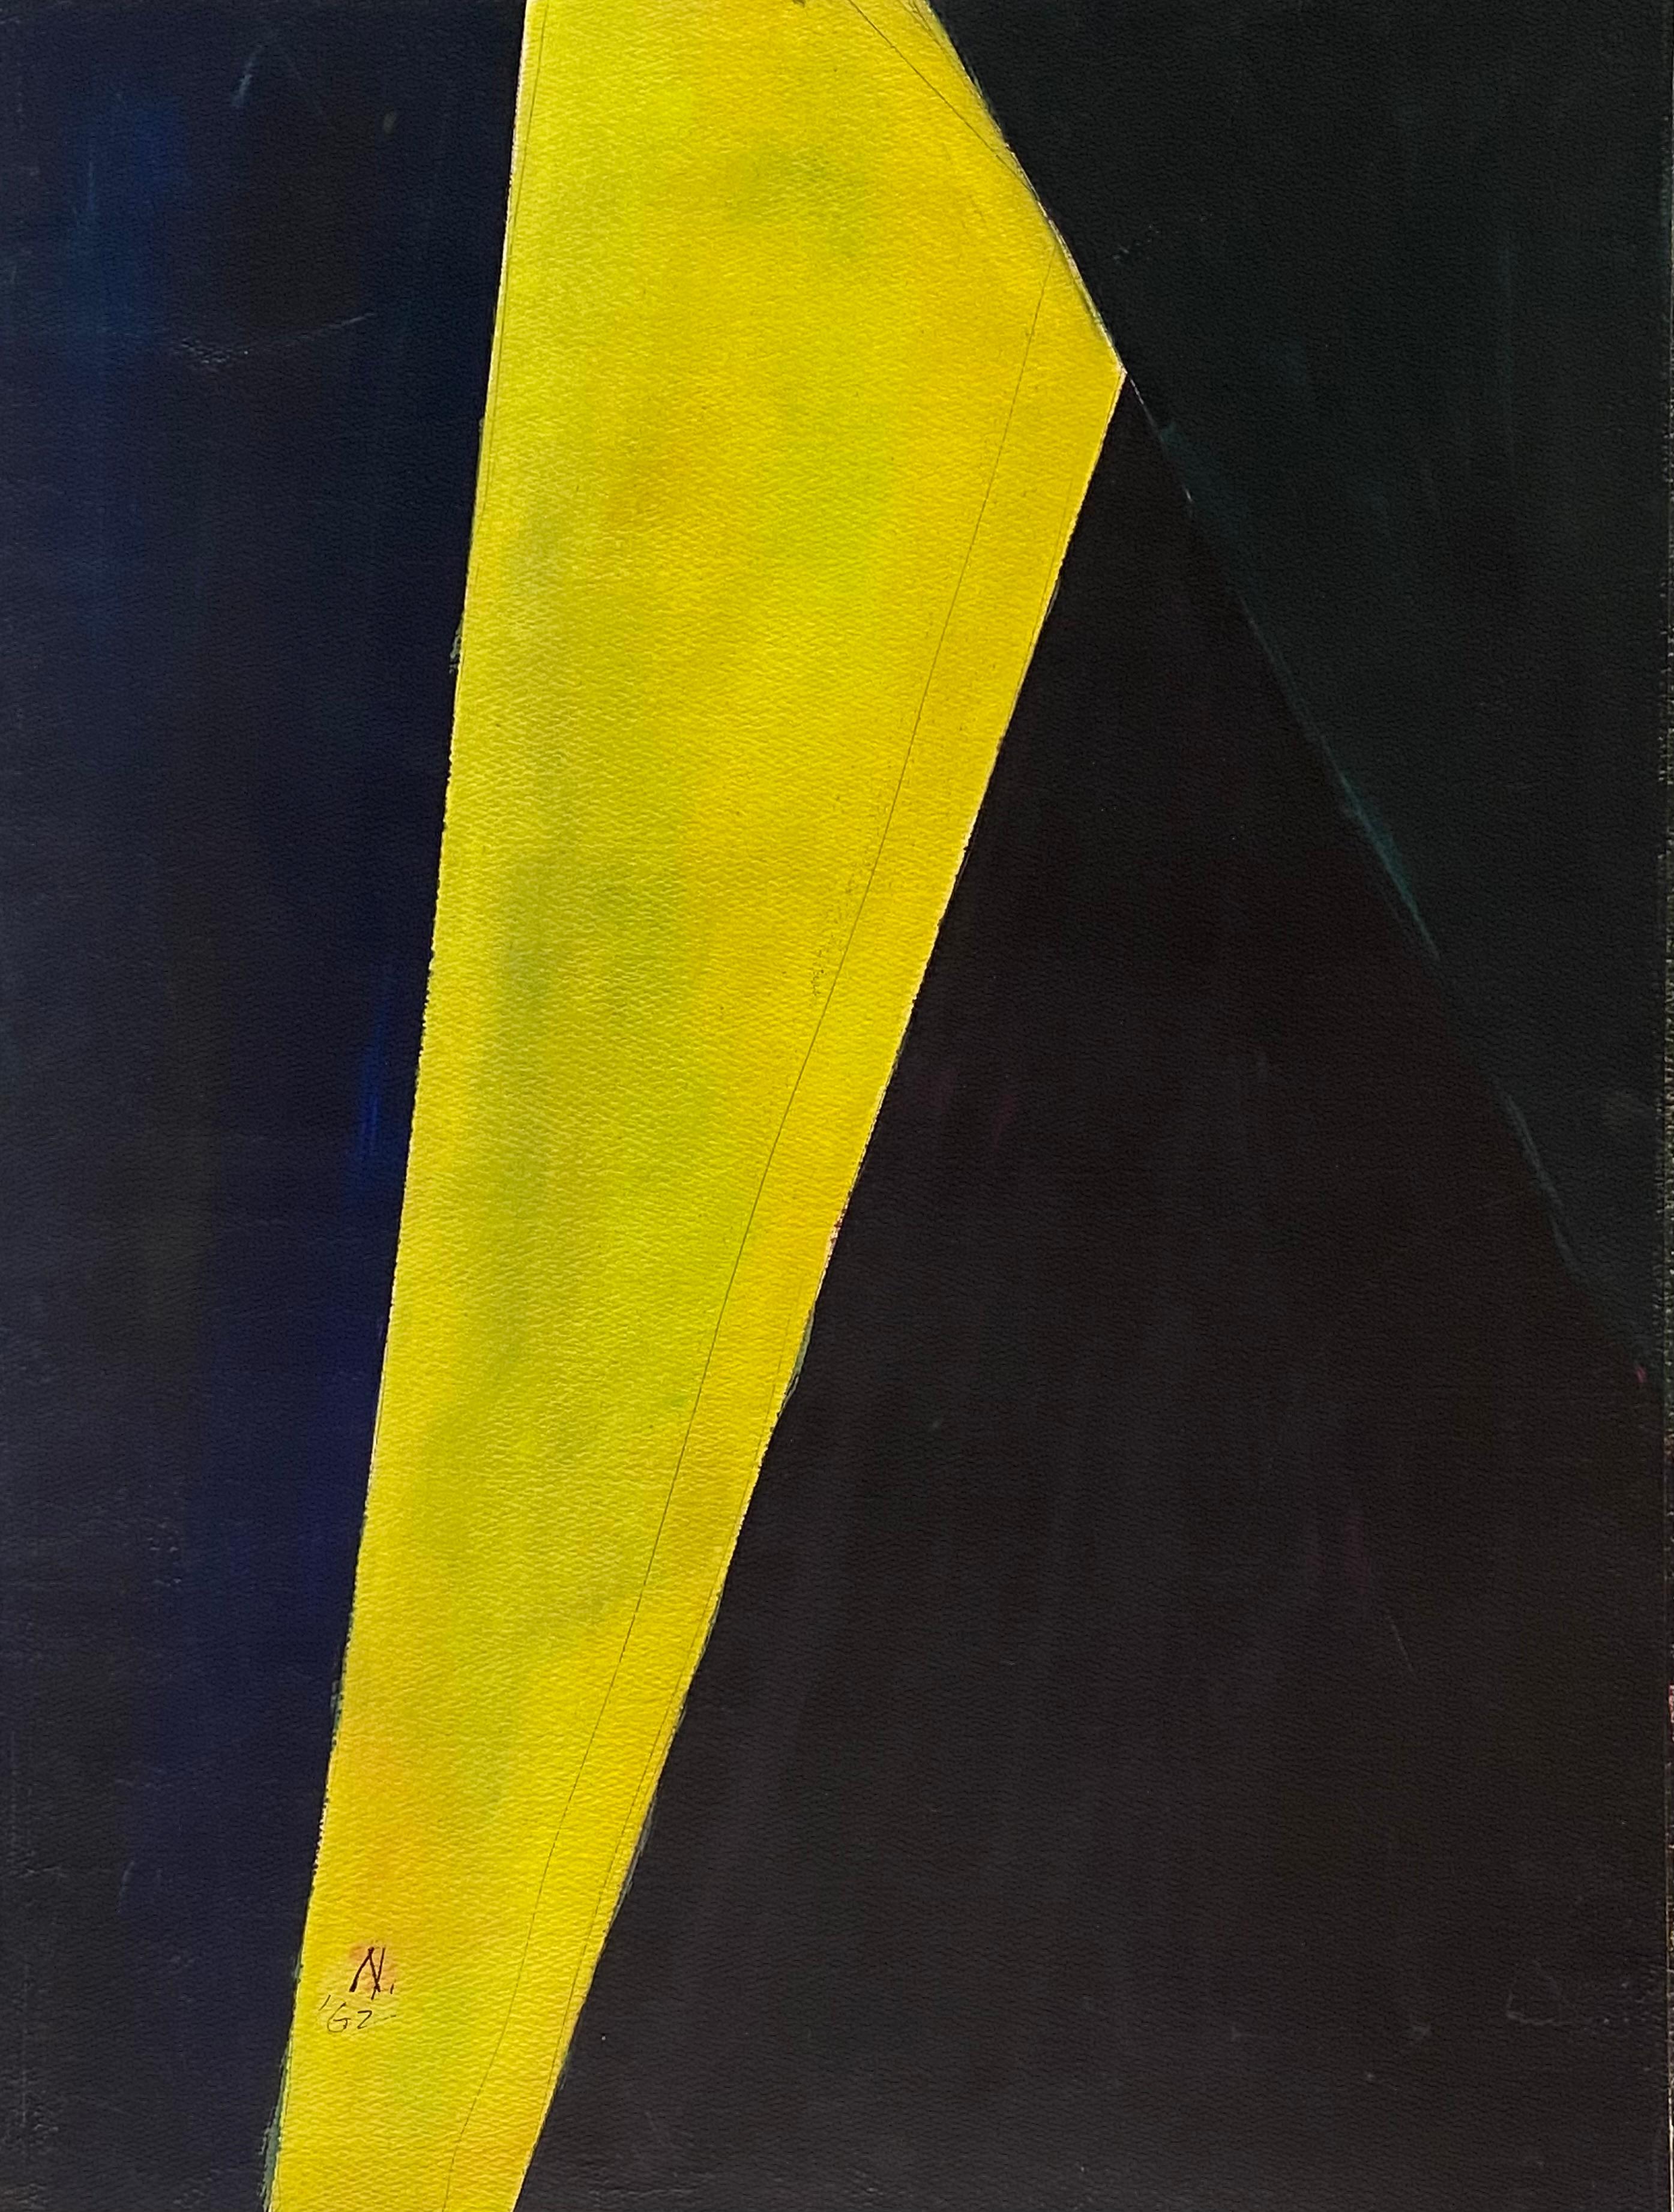 Abstrakt in Schwarz und Gelb – Art von Lloyd Raymond Ney